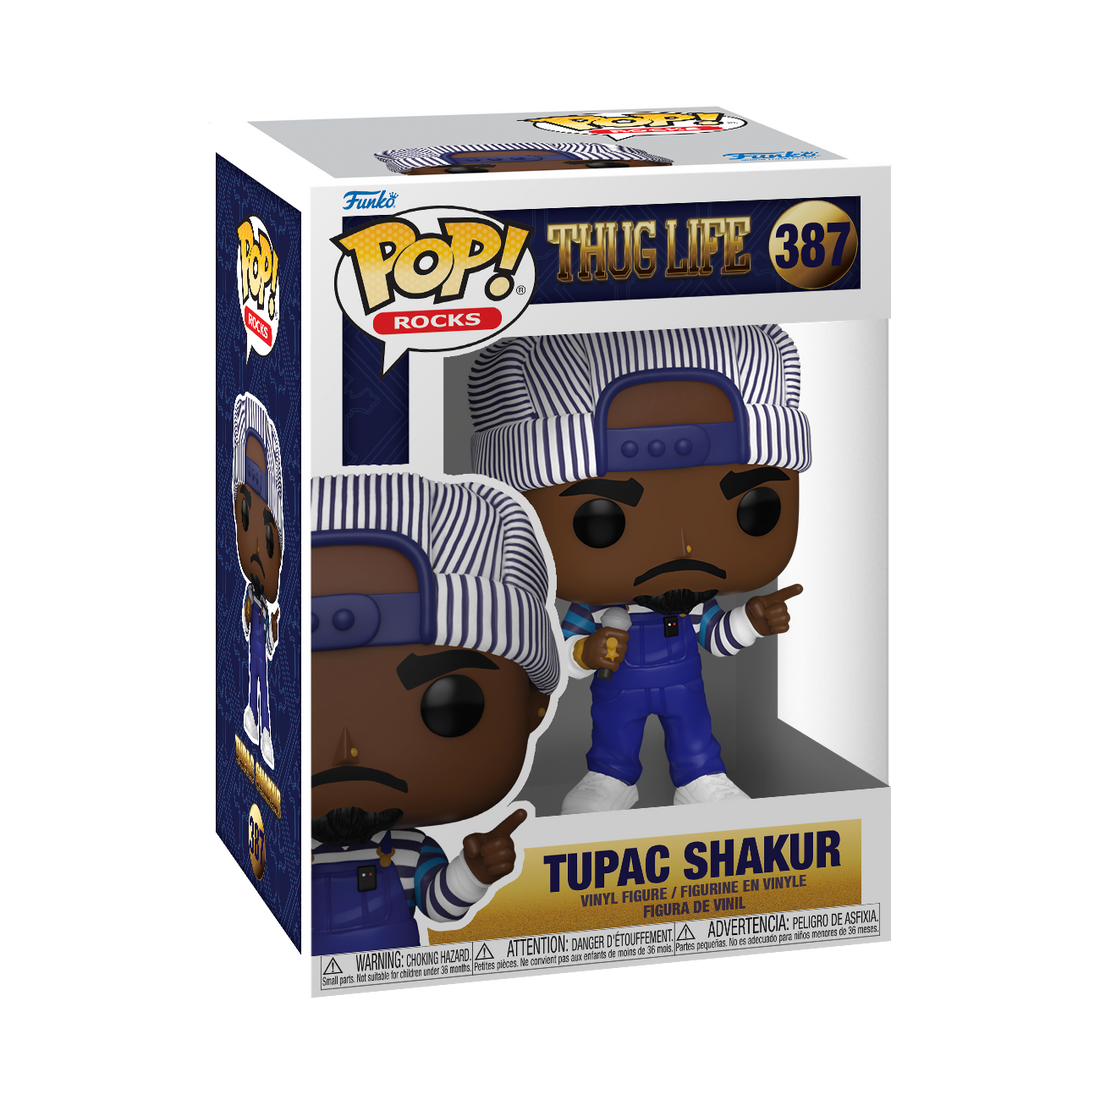 Funko Pop! Rocks Thug Life 387 Tupac Shakur Funko